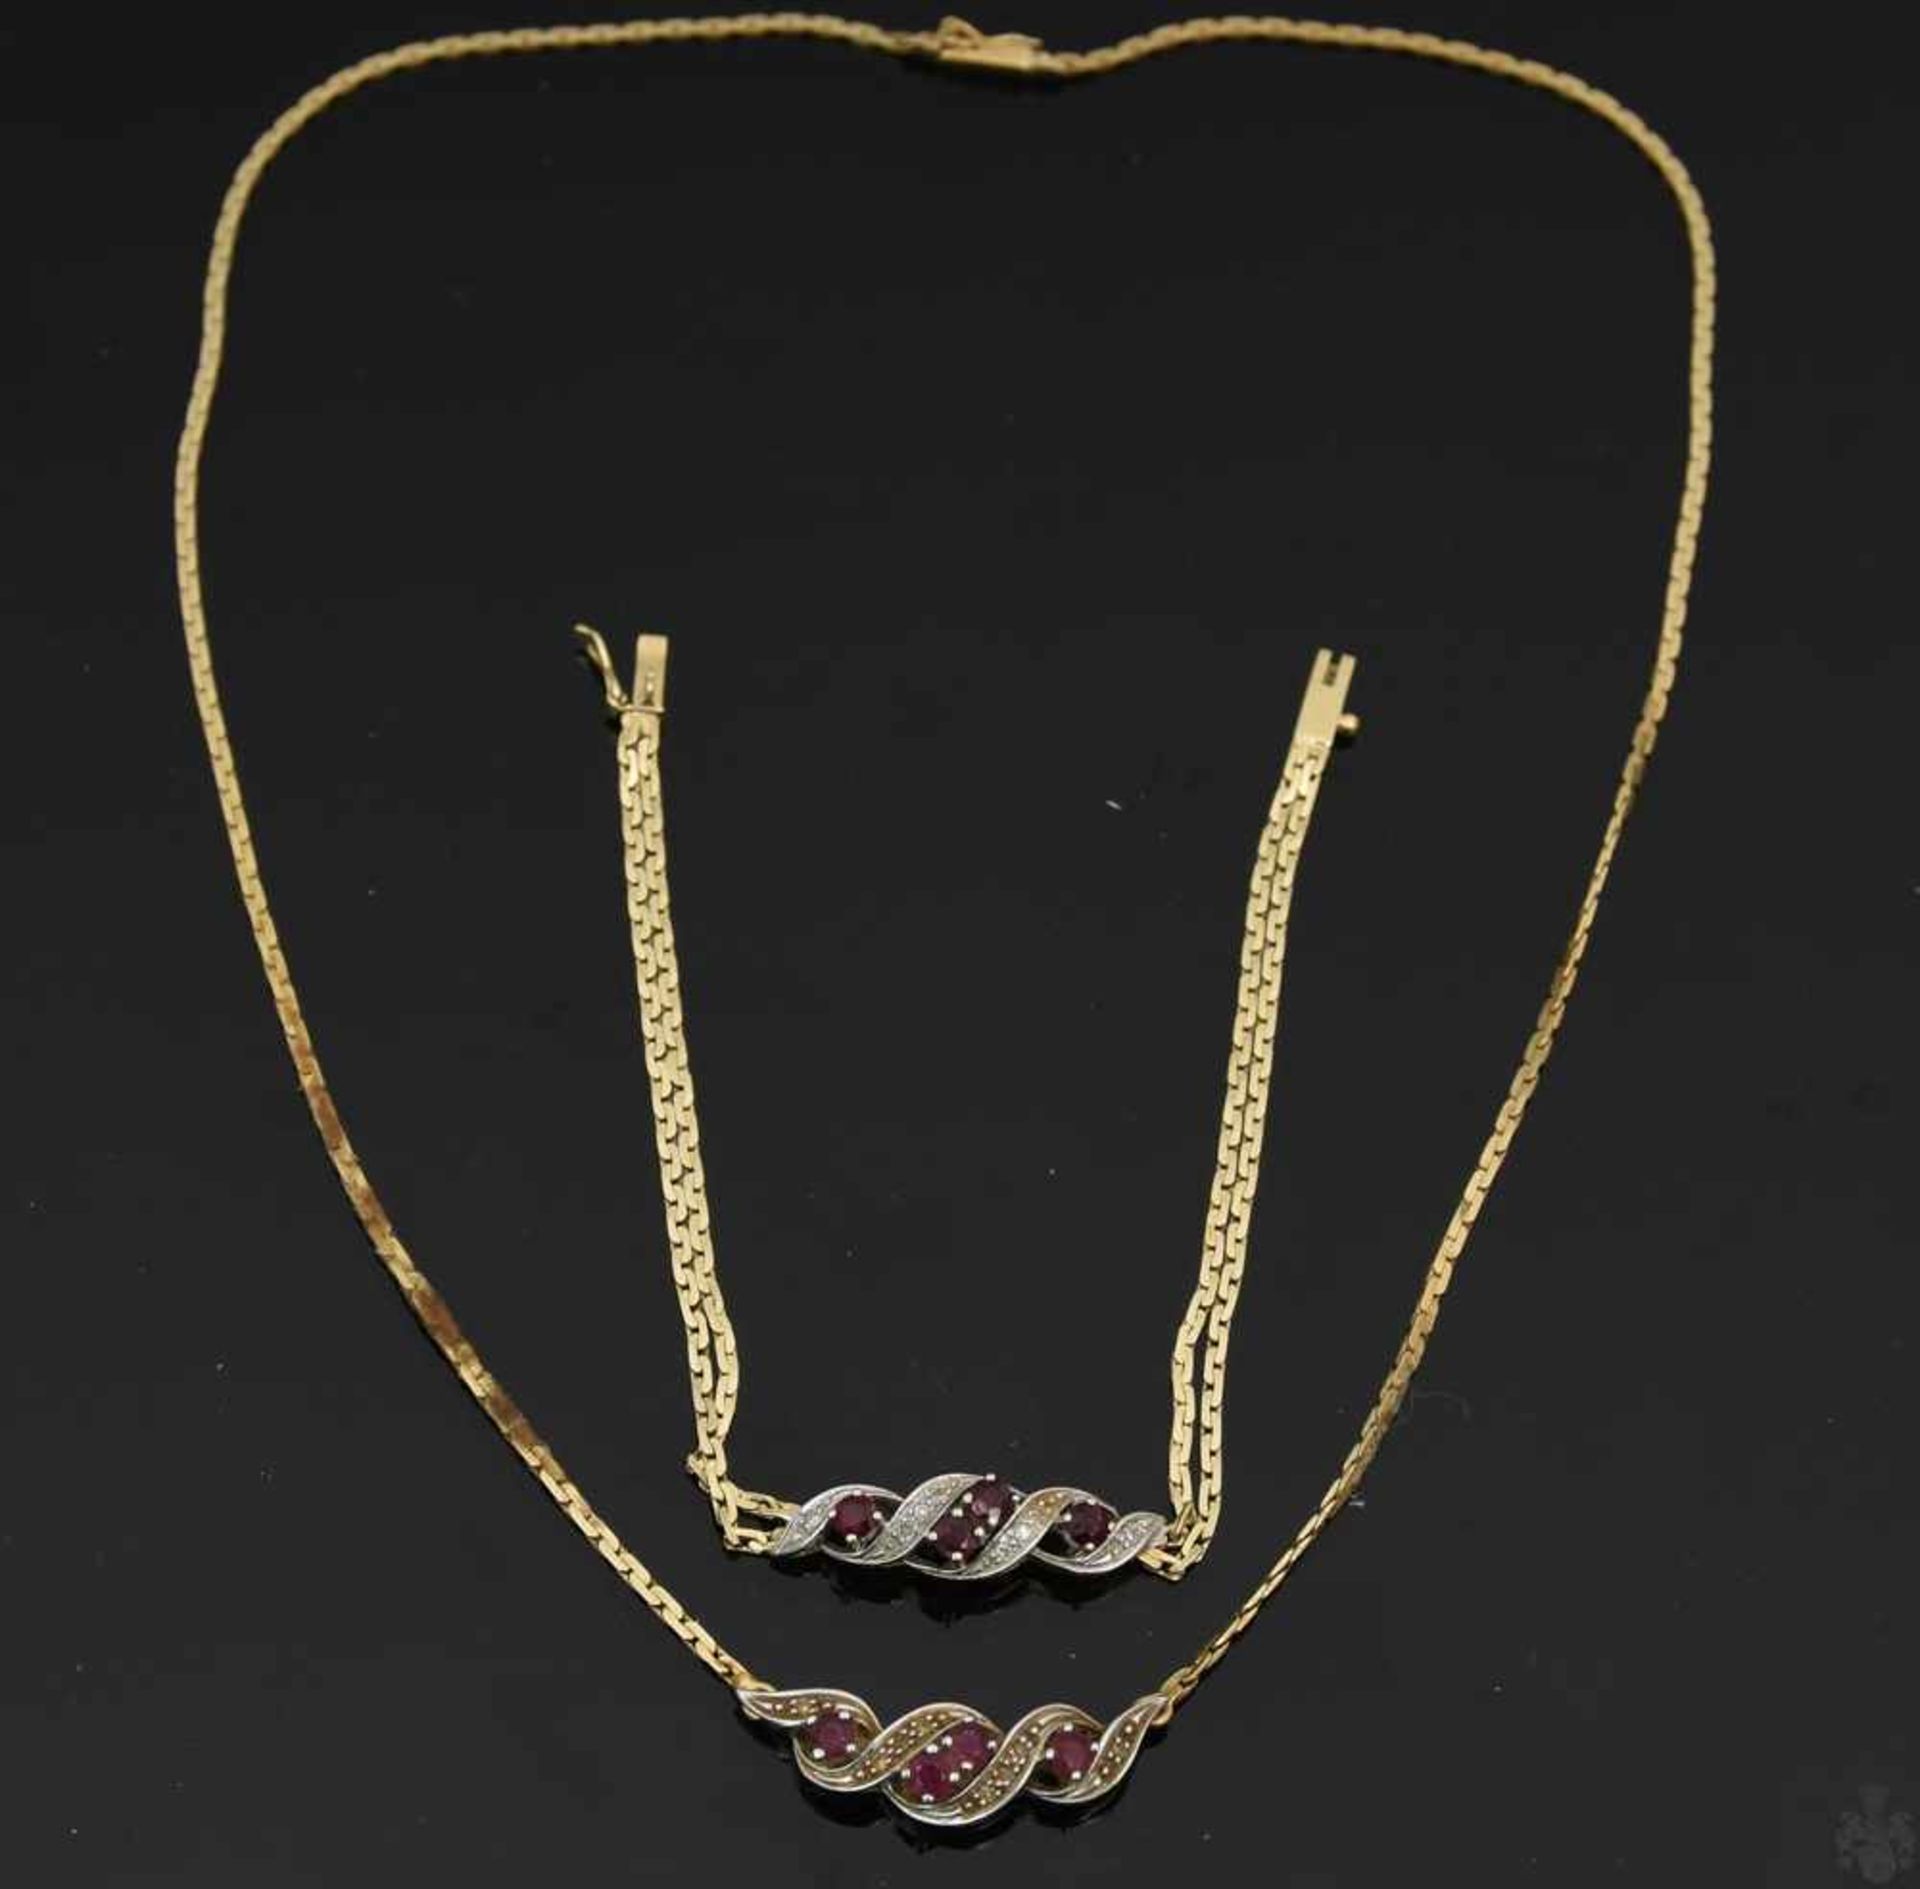 HALSKETTE UND ARMBAND, Rubine/Diamanten, 585er GelbgoldZueinander passendes Set aus Halskette und